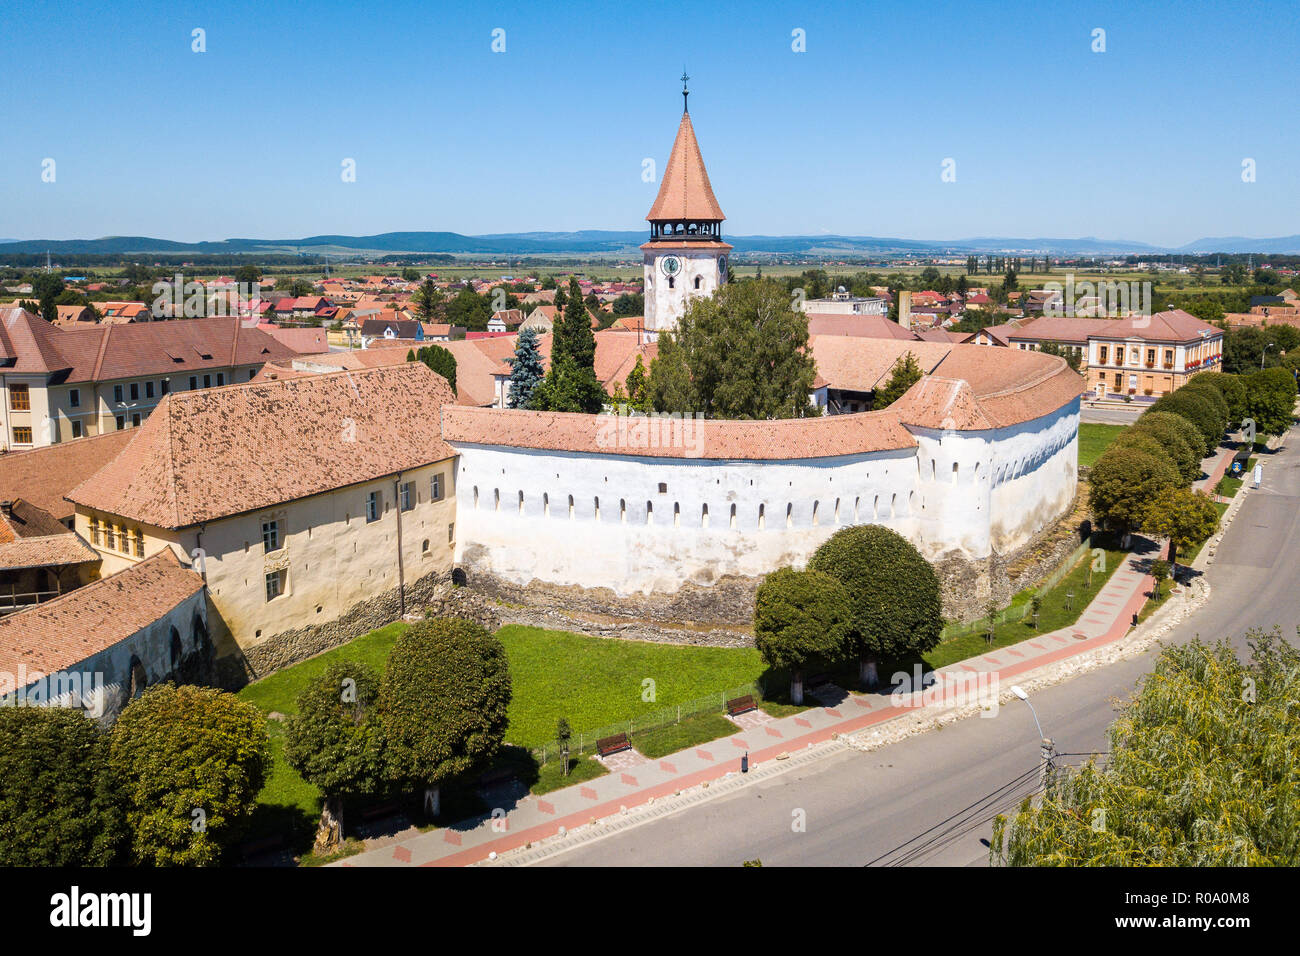 Prejmer chiesa fortificata, Brasov County, Transilvania, Romania. Vista aerea. La fortezza medievale con una chiesa, Clock Tower, alta guglia, pareti spesse. Foto Stock